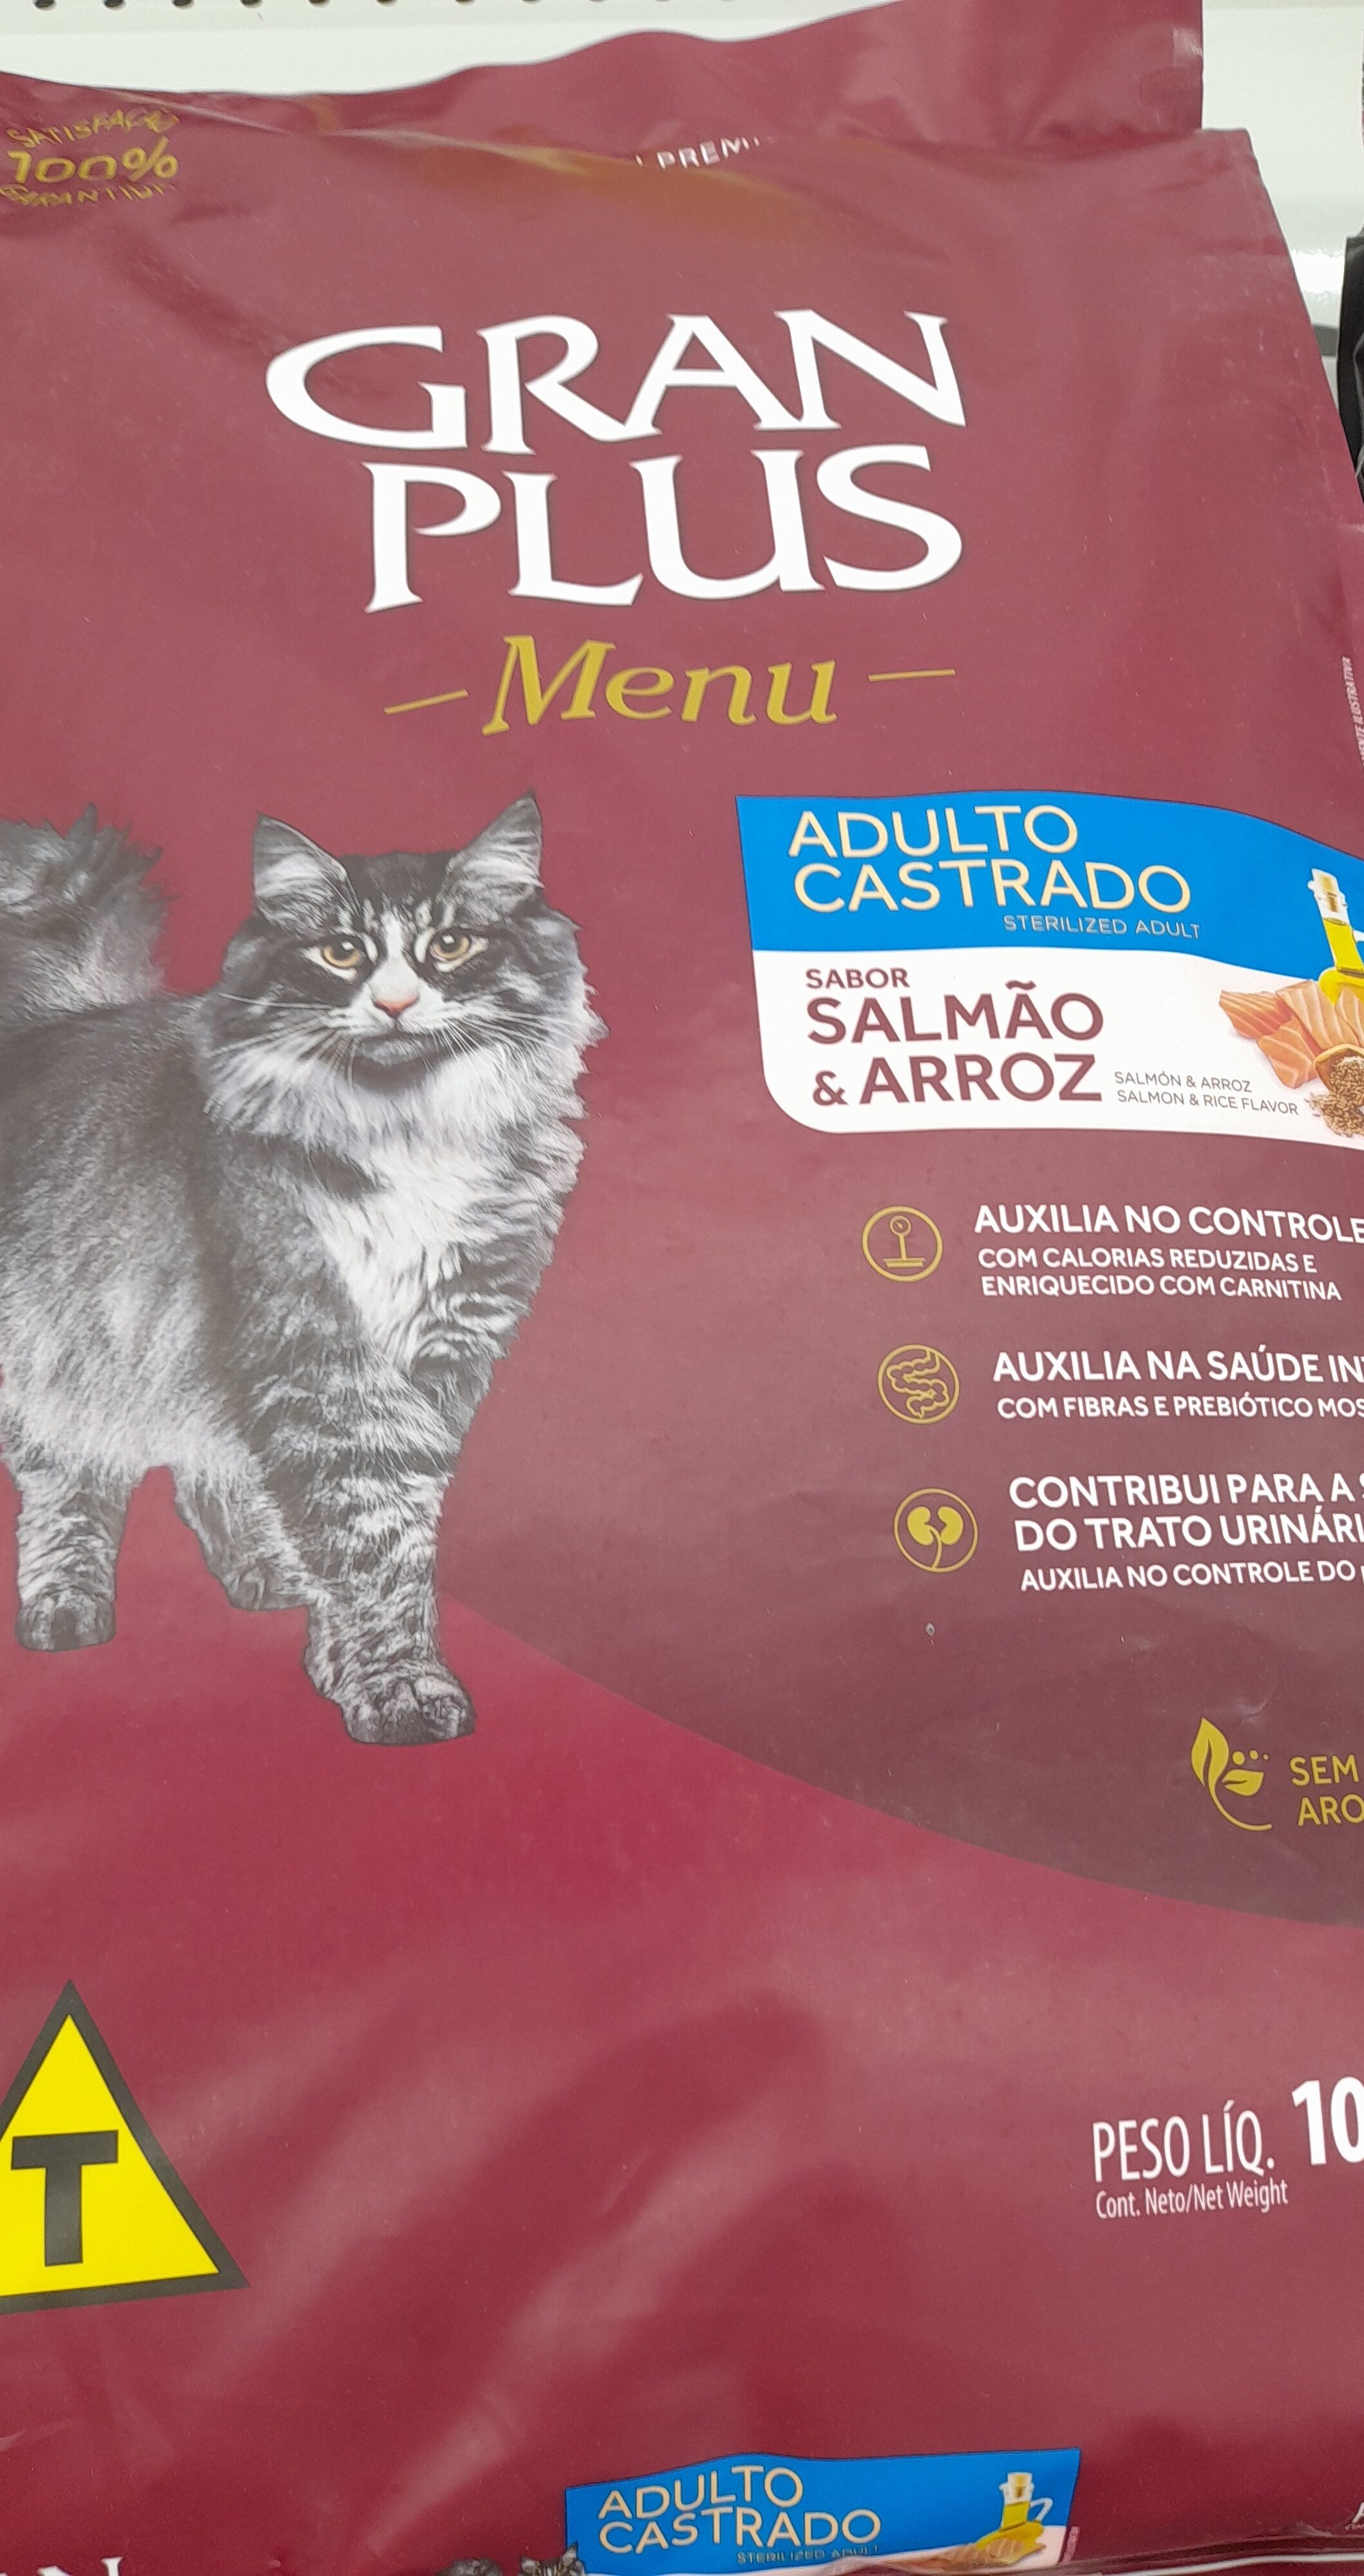 Granplus menu gatos ad cast salmao e arroz - Product - pt